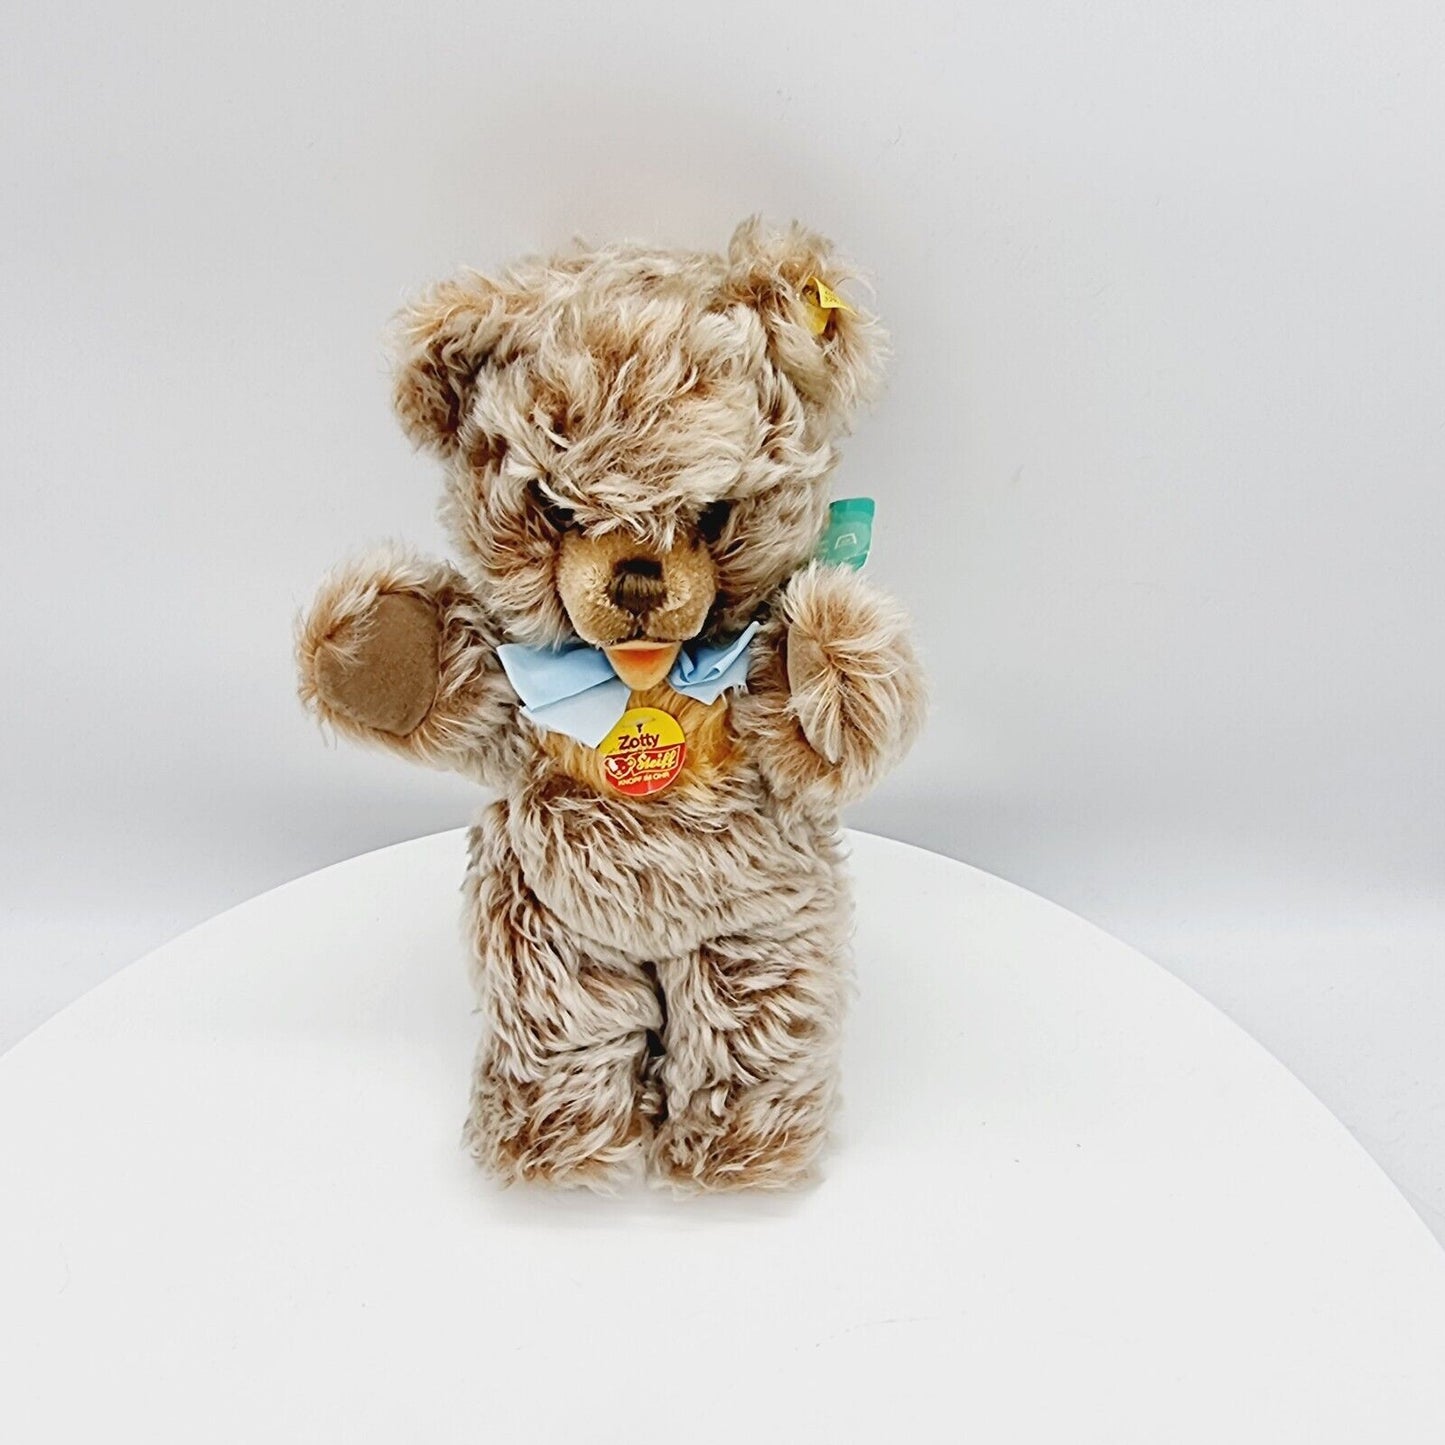 Steiff Teddybär Zotty 0305/32 32 cm blond-braun mit blauer Schleife